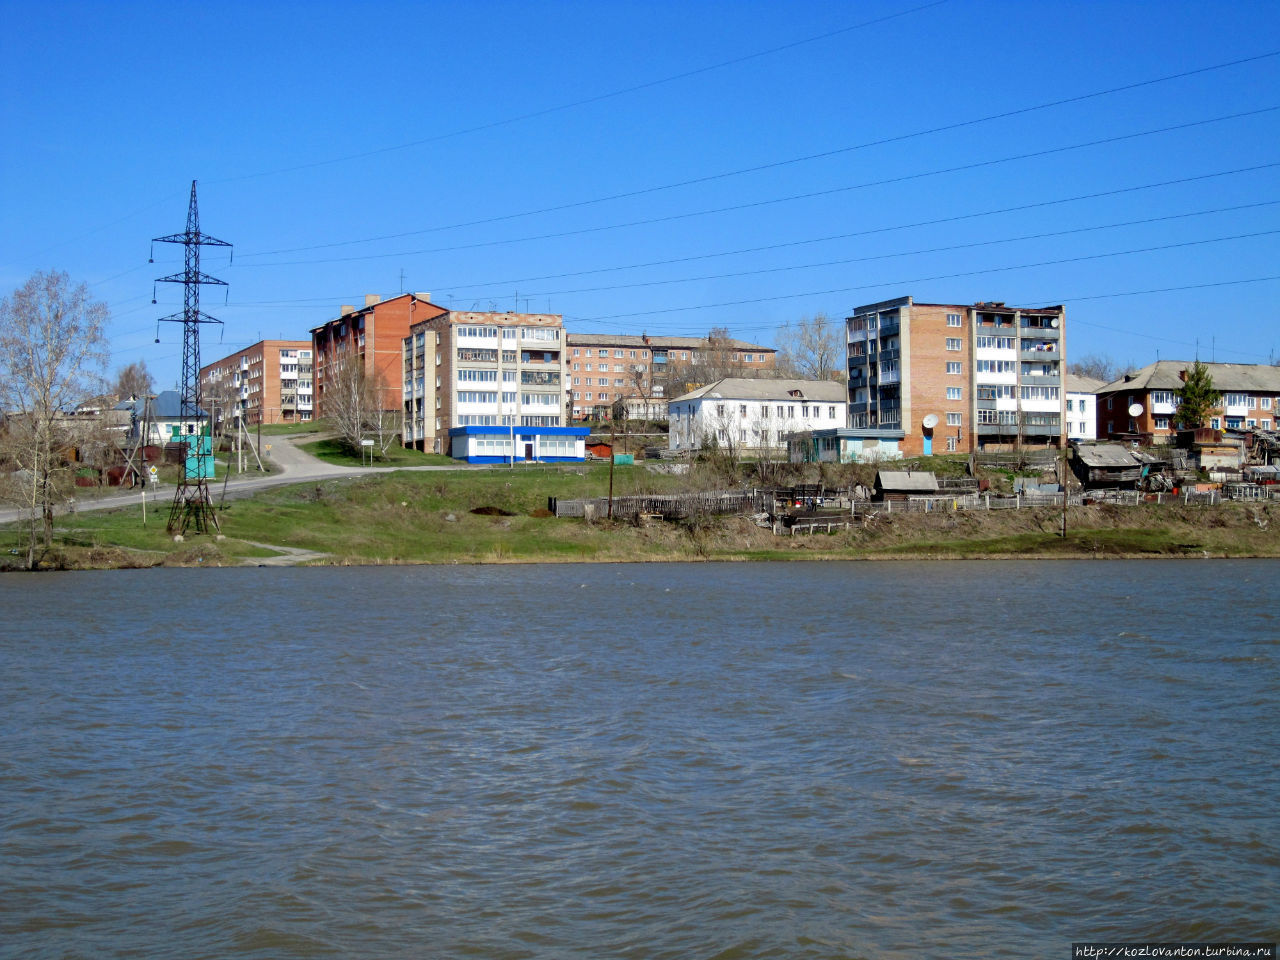 Вид на поселок со стороны Комсомольского пруда. Яшкино, Россия